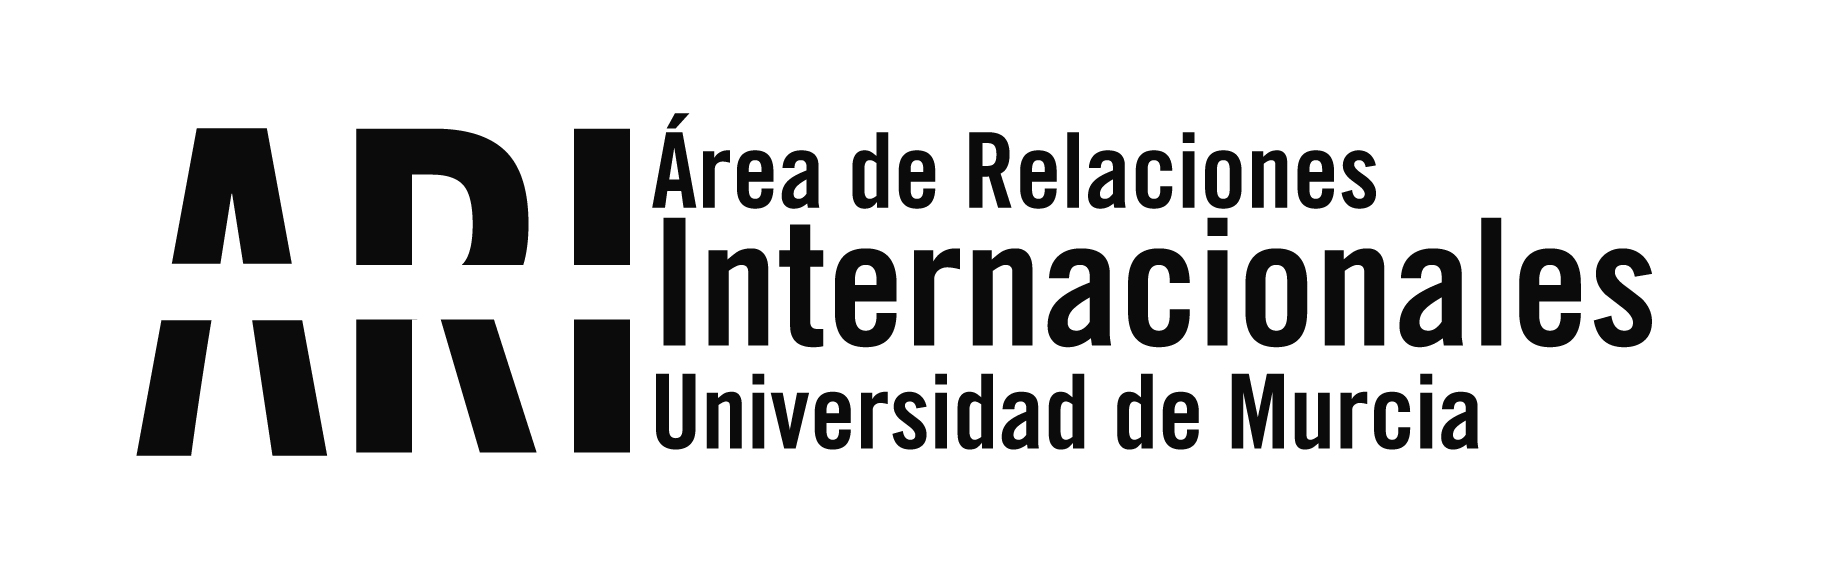 Boletín/Newsletter nº9 del Vicerrectorado de Internacionalización de la UMU del martes 25 de septiembre de 2018 - Área de Relaciones Internacionales